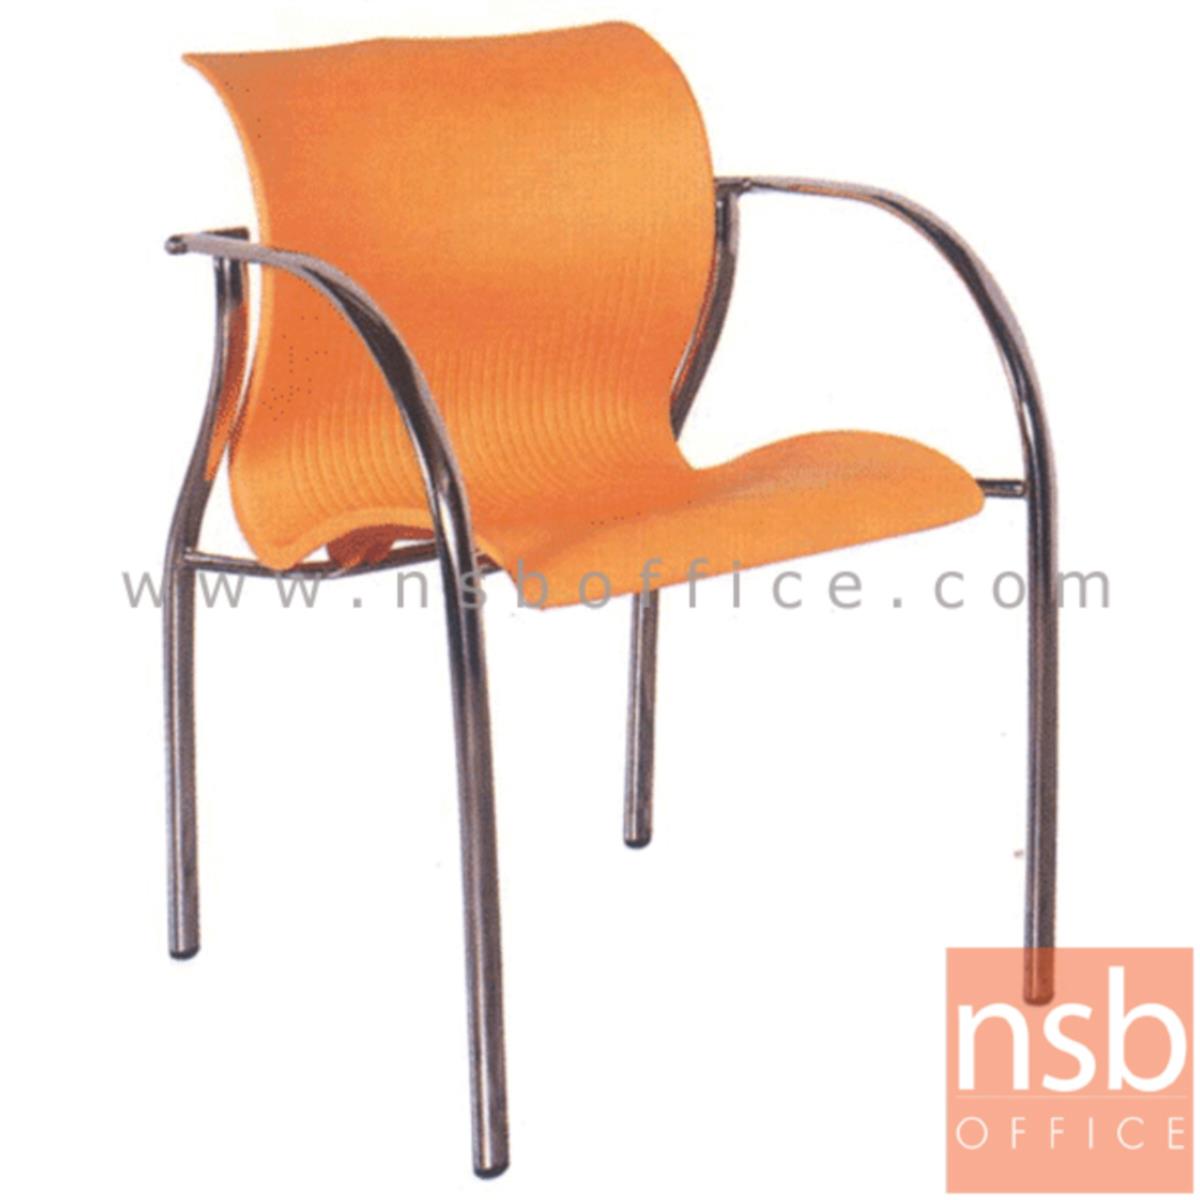 B05A036:เก้าอี้อเนกประสงค์เฟรมโพลี่ รุ่น A2-801 ขาเหล็ก 